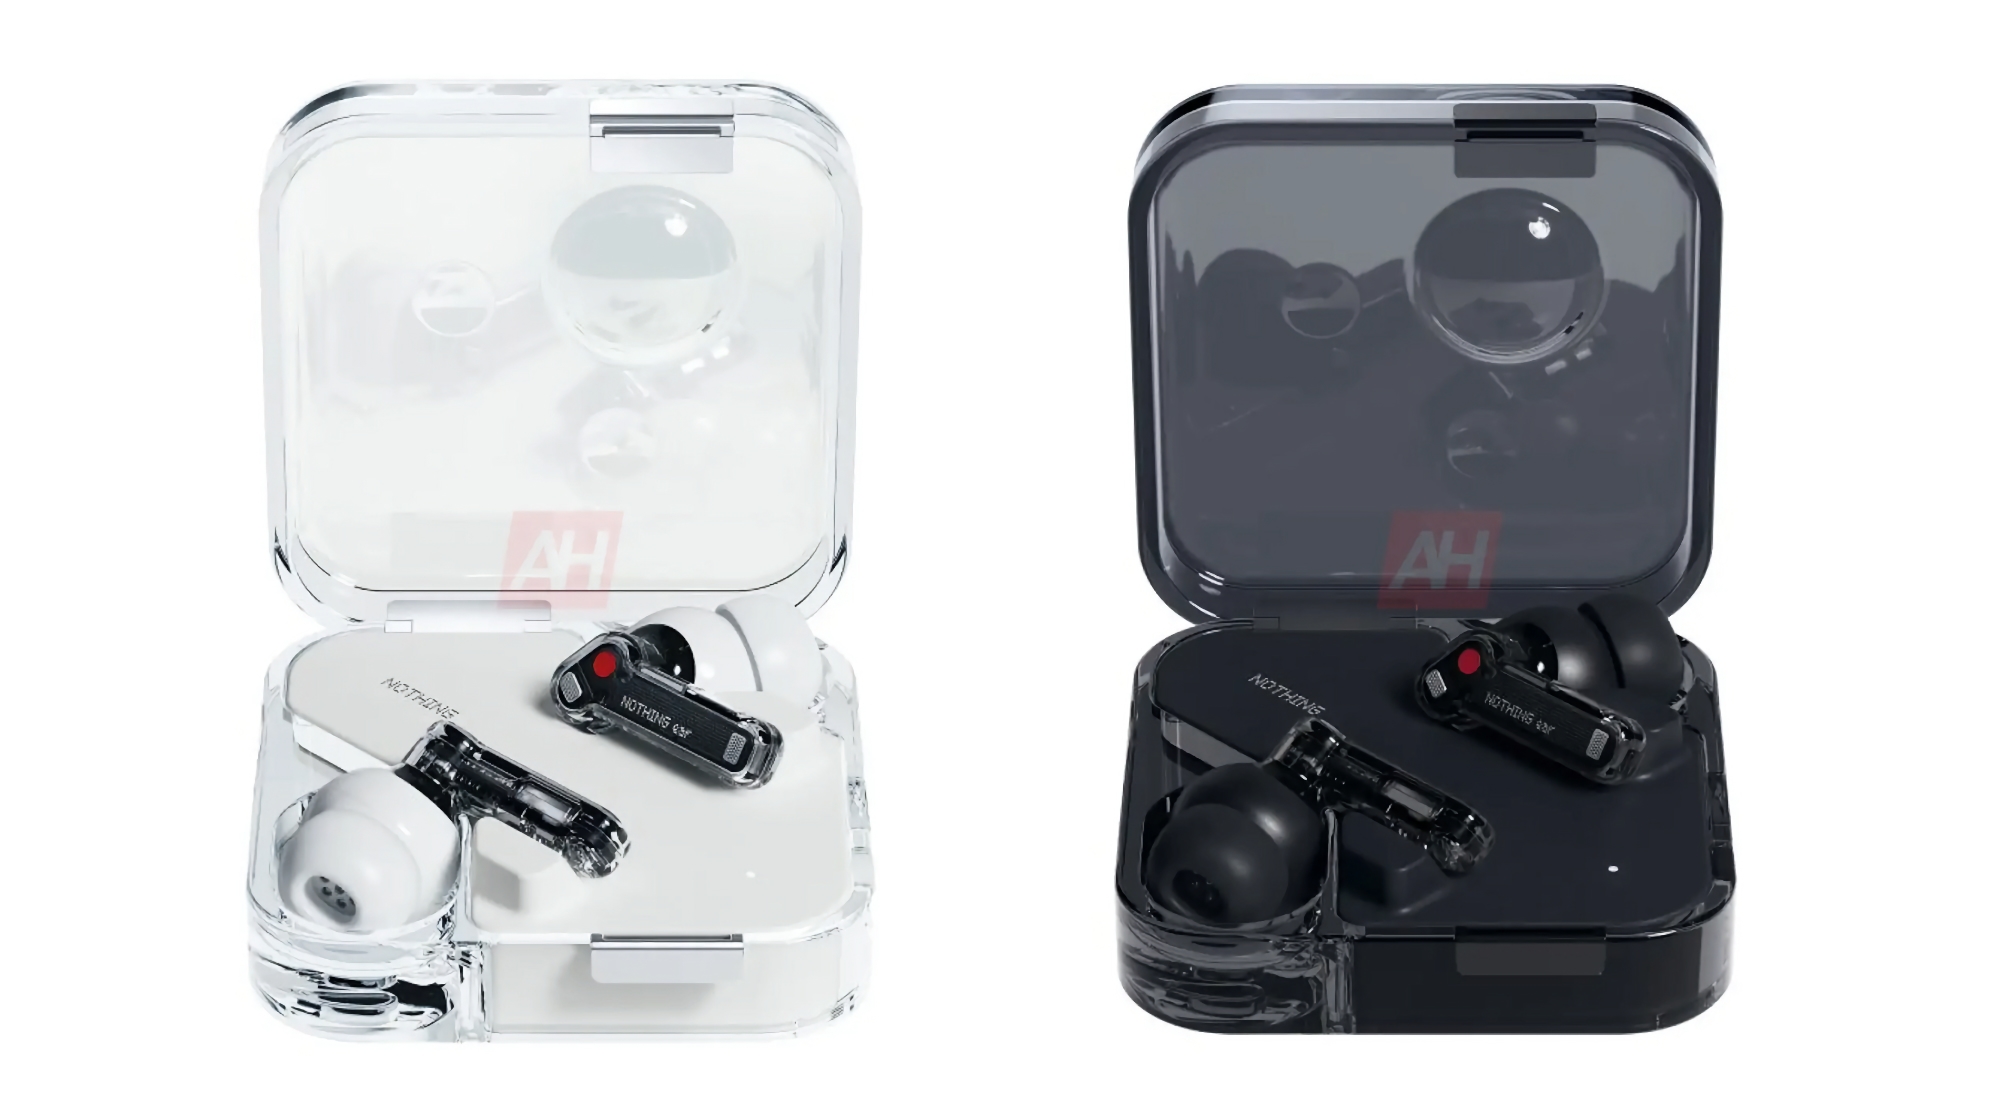 Så här kommer Nothing Ear att se ut: företagets nya TWS öronsnäckor i toppklass med transparent design för 150 euro